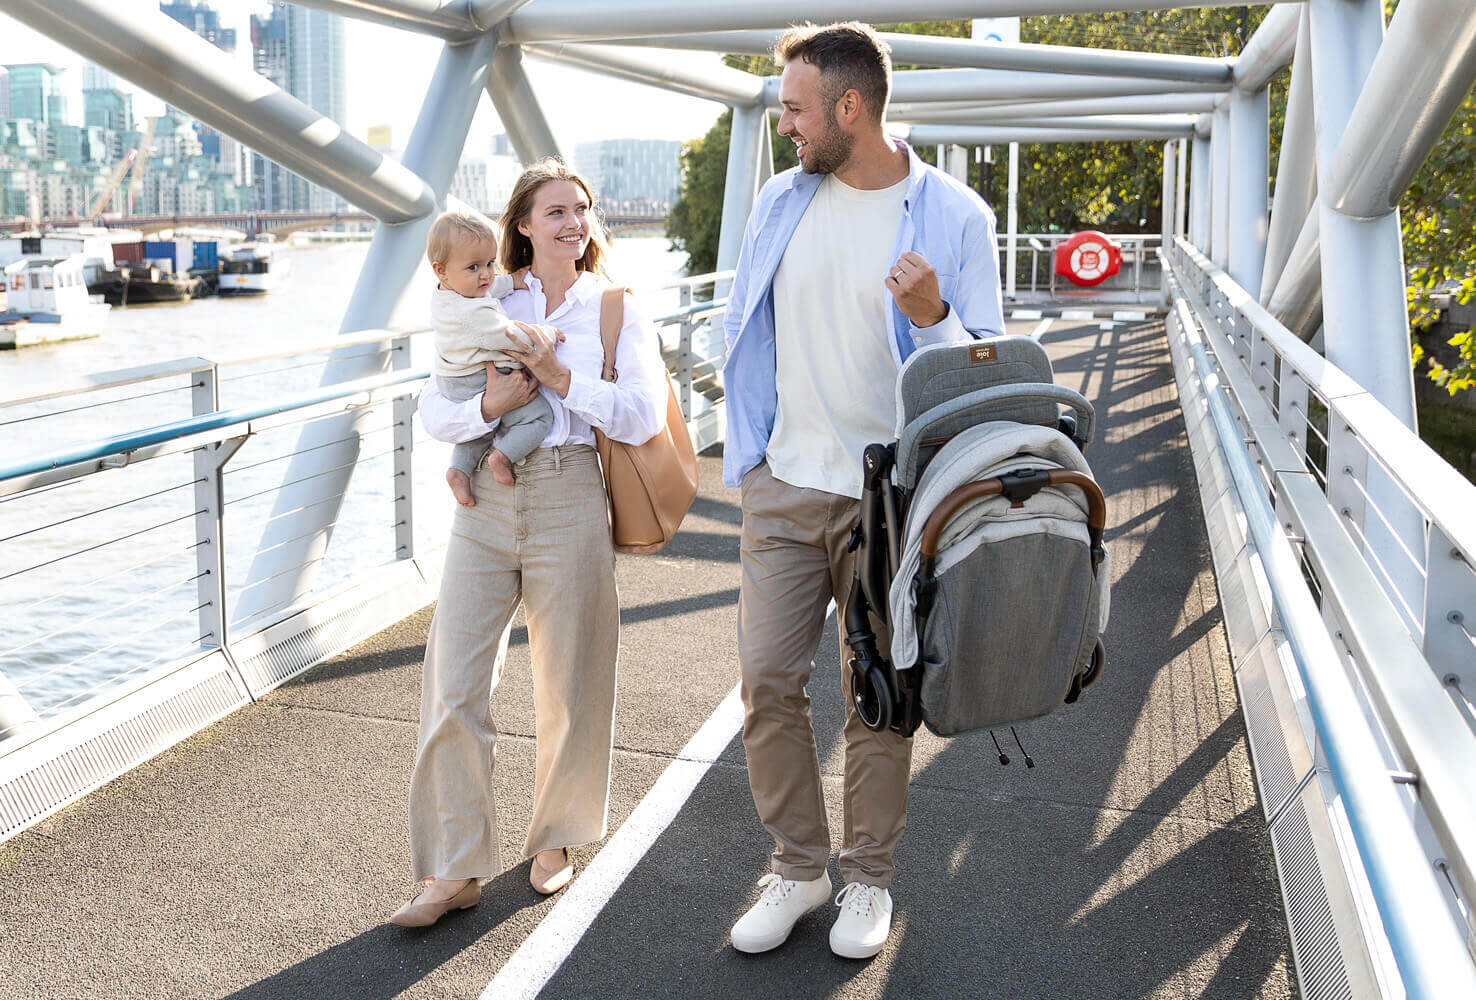 Poussette Joie tourist repliée, portée par un père pendant que la mère et son bébé marchent à ses côtés sur un pont.